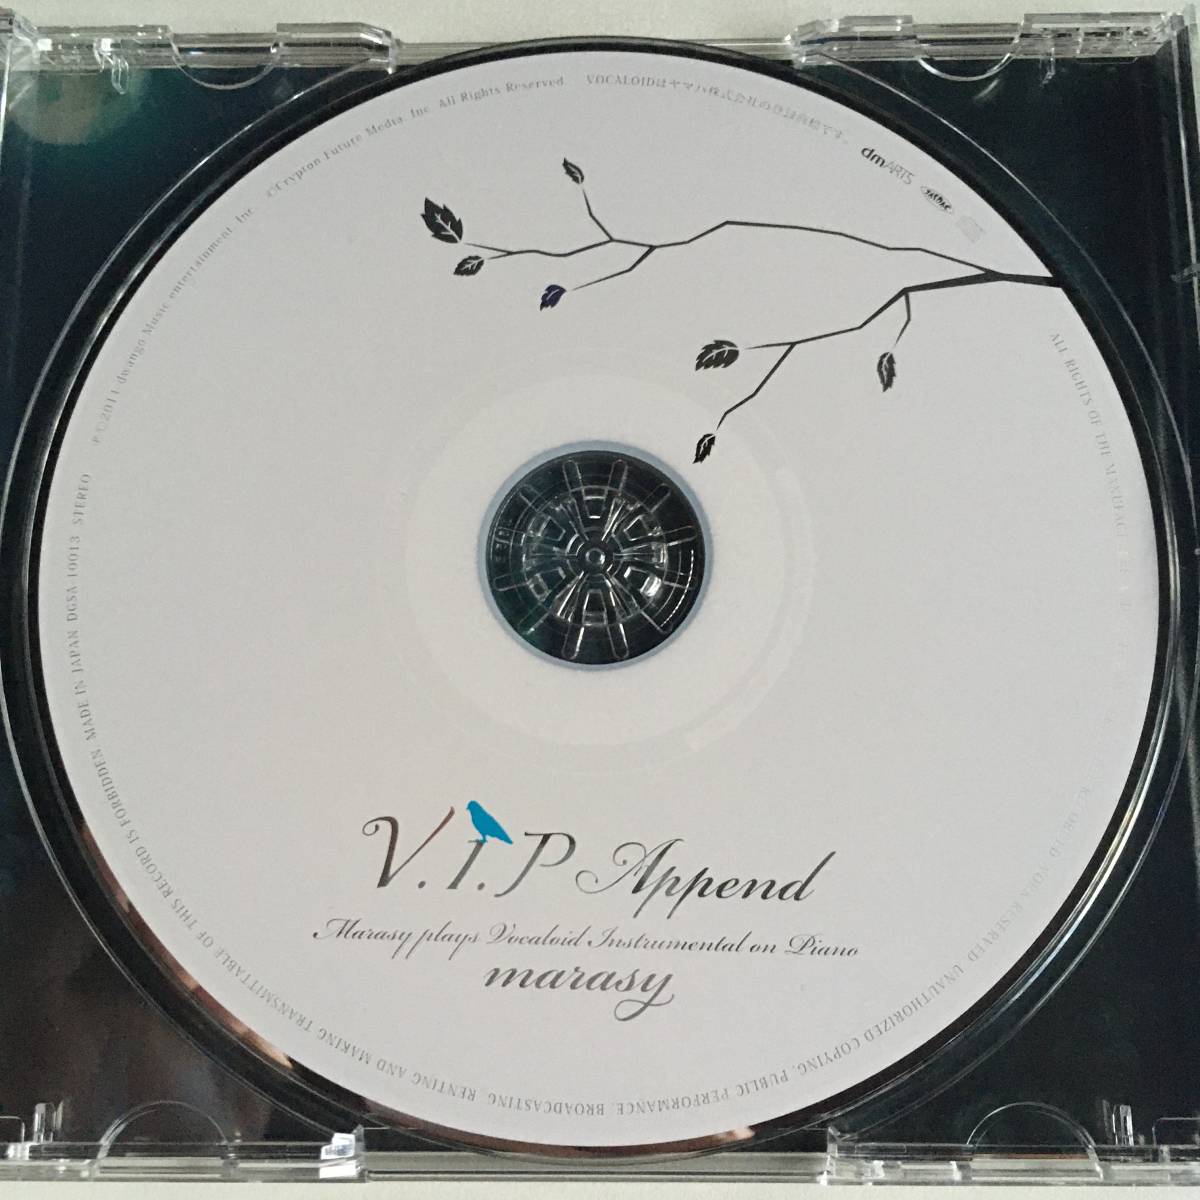 帯付 ◎ V.I.P Append Marasy plays Vocaloid Instrumental on Piano ◎ まらしぃ 初音ミク_画像3